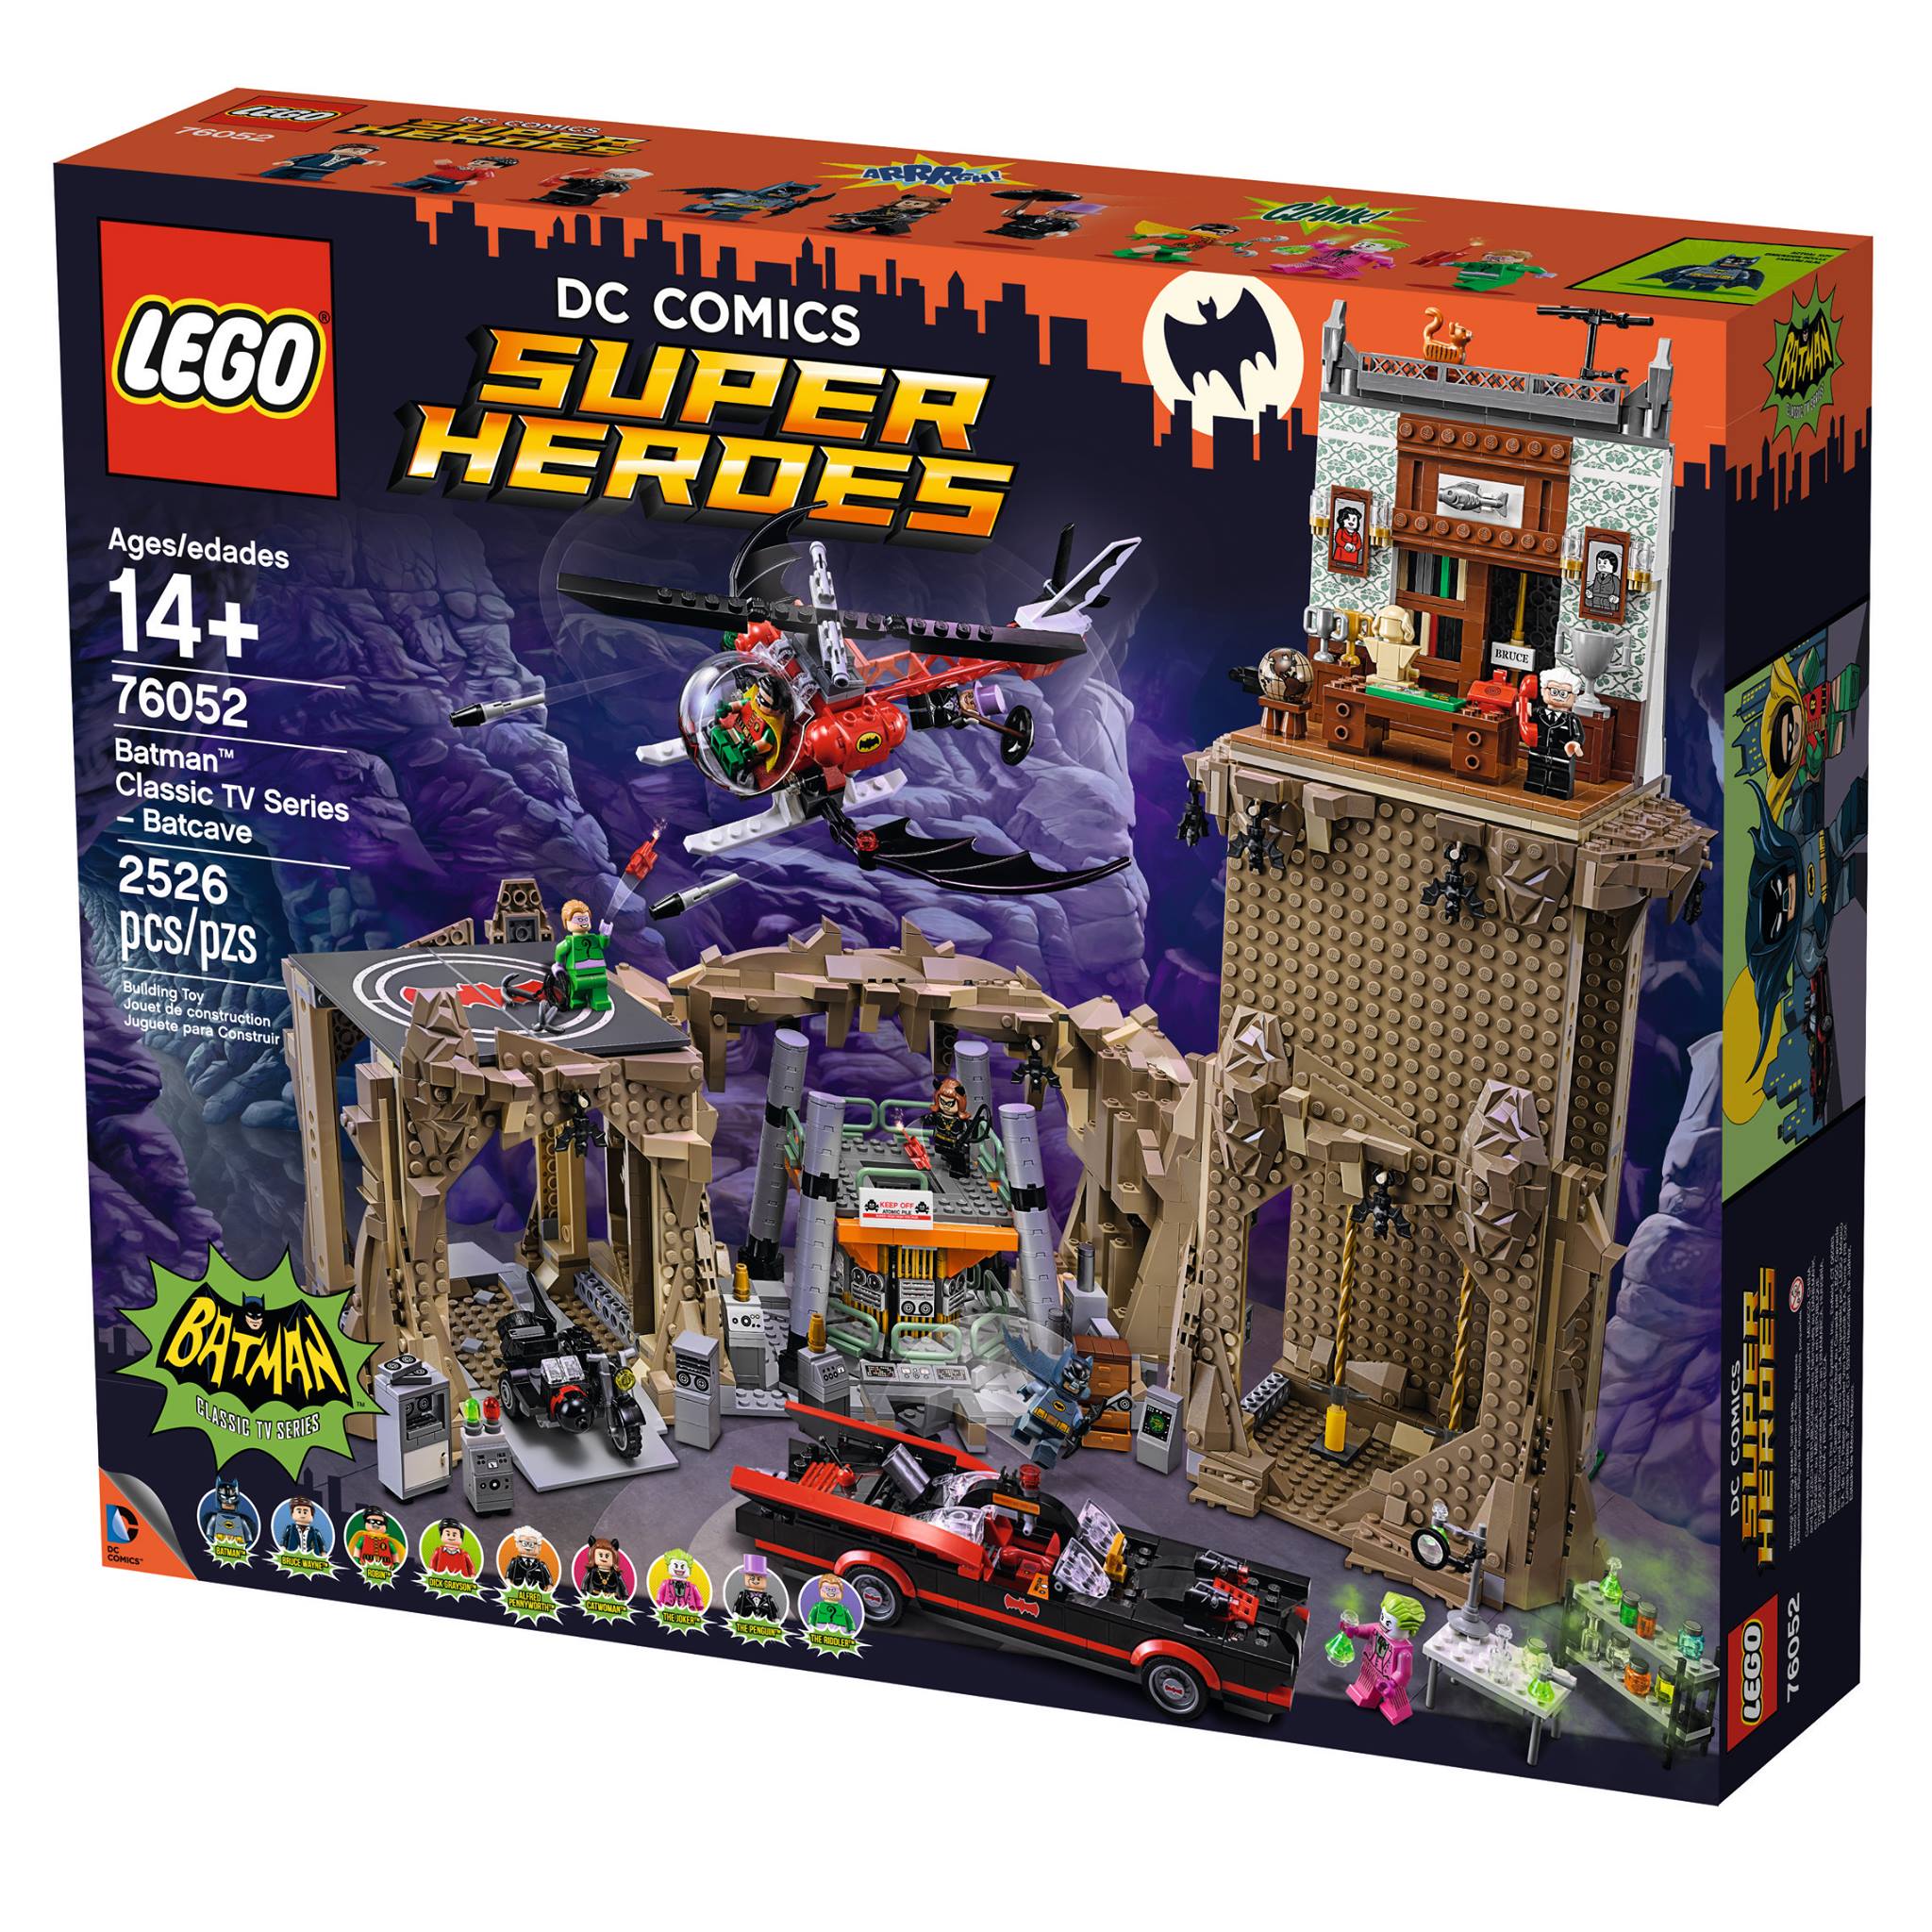 LEGO Batman Classic TV Series Batcave